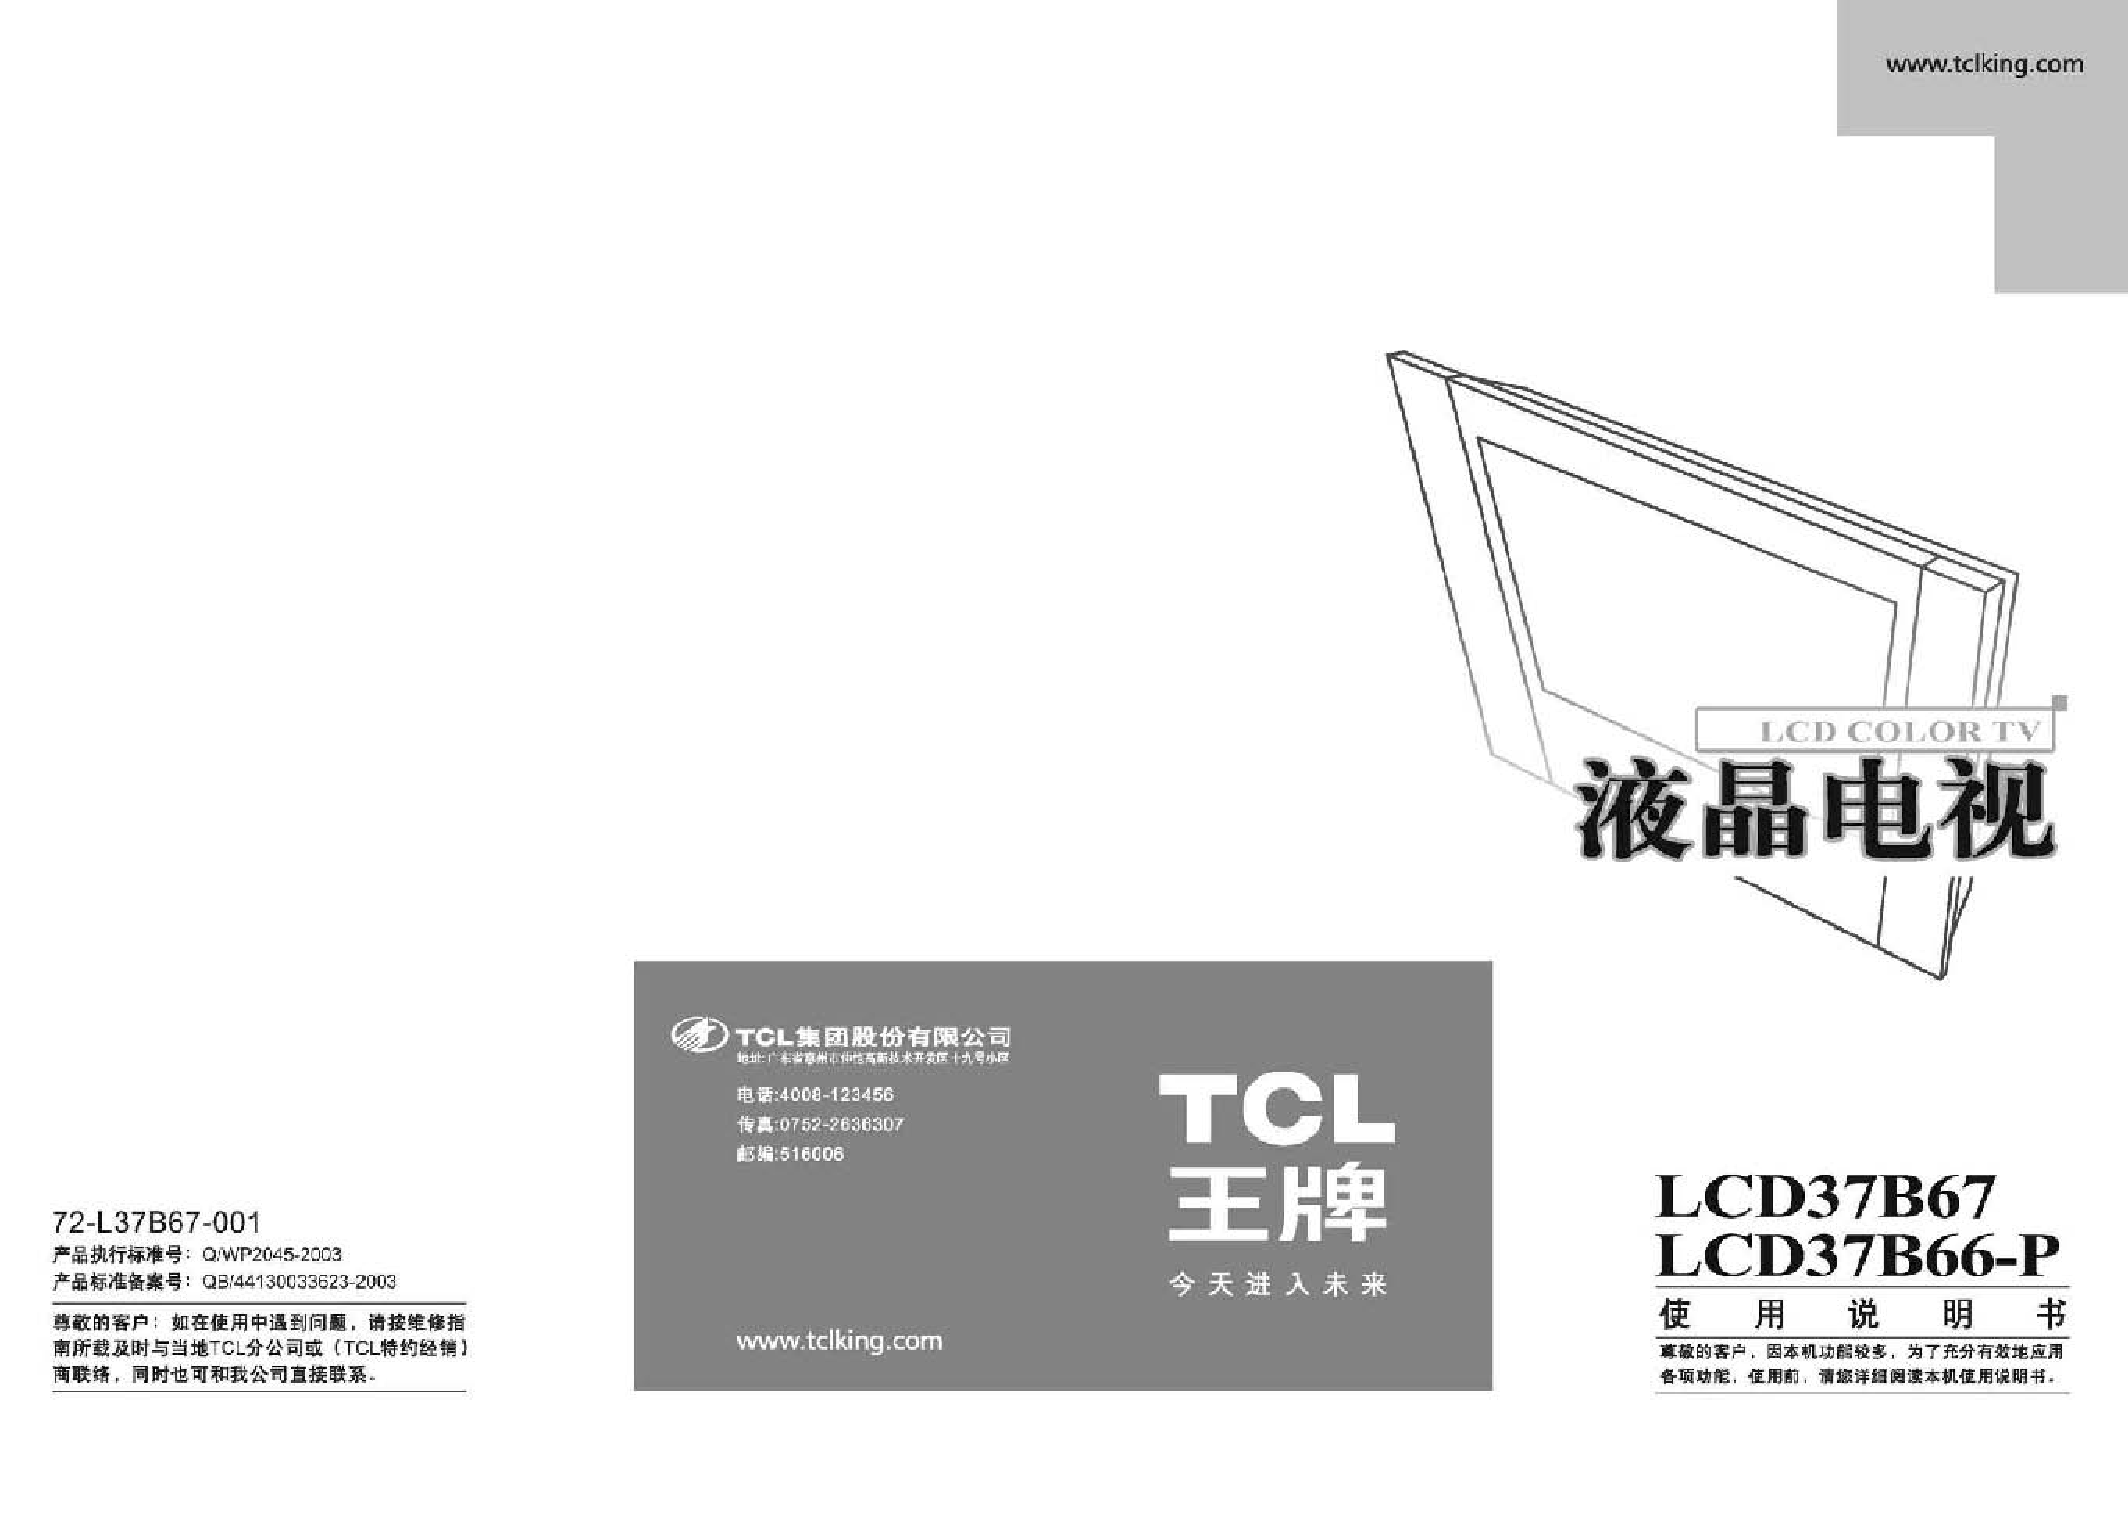 TCL LCD37B66-P 使用说明书 封面